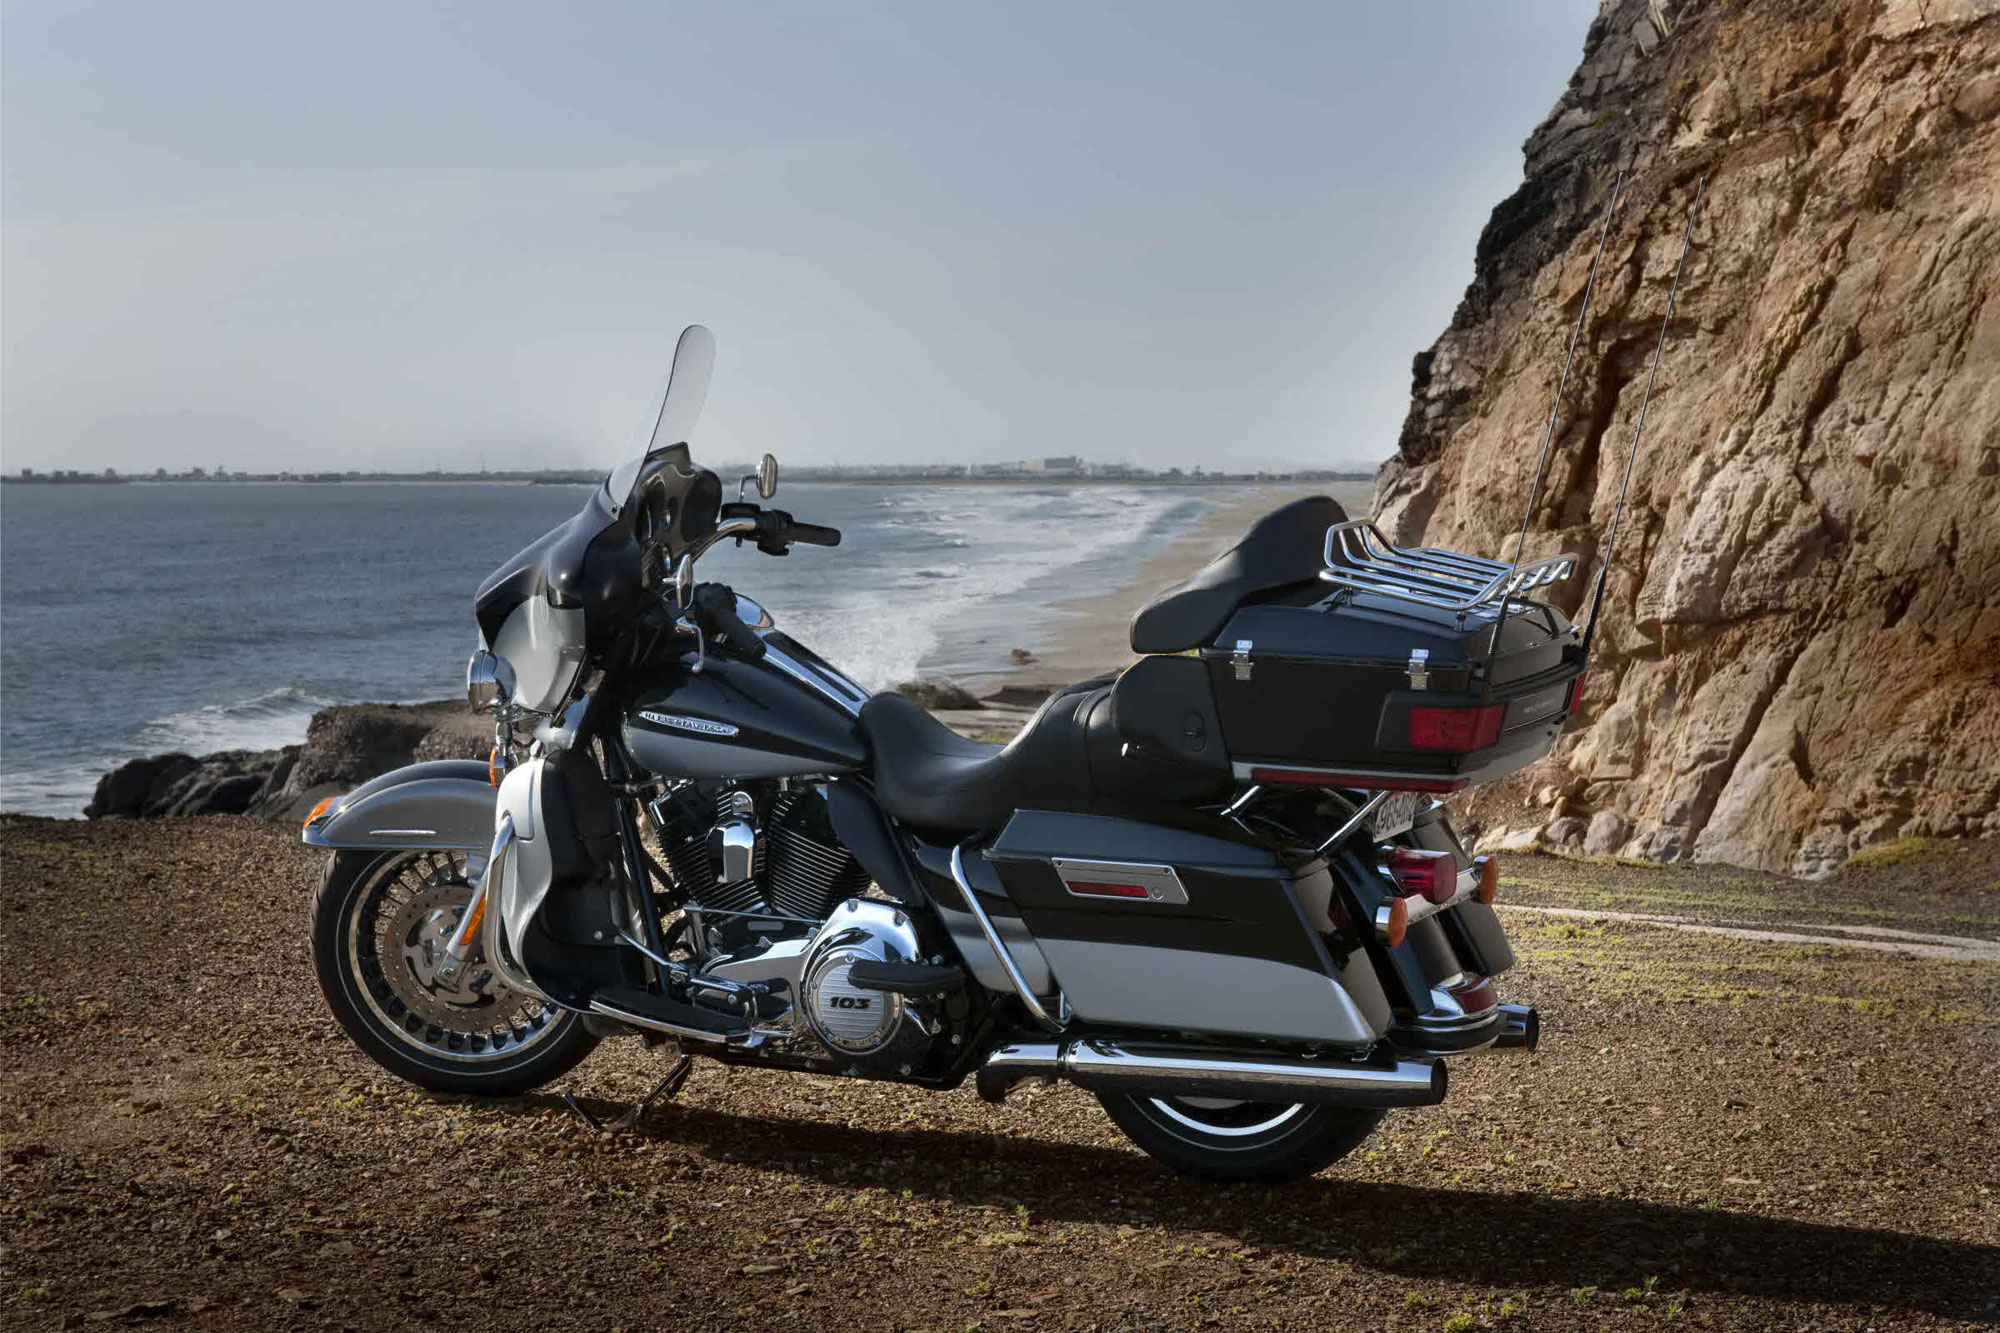 2013 Harley Davidson Electra Glide Ultra Limited